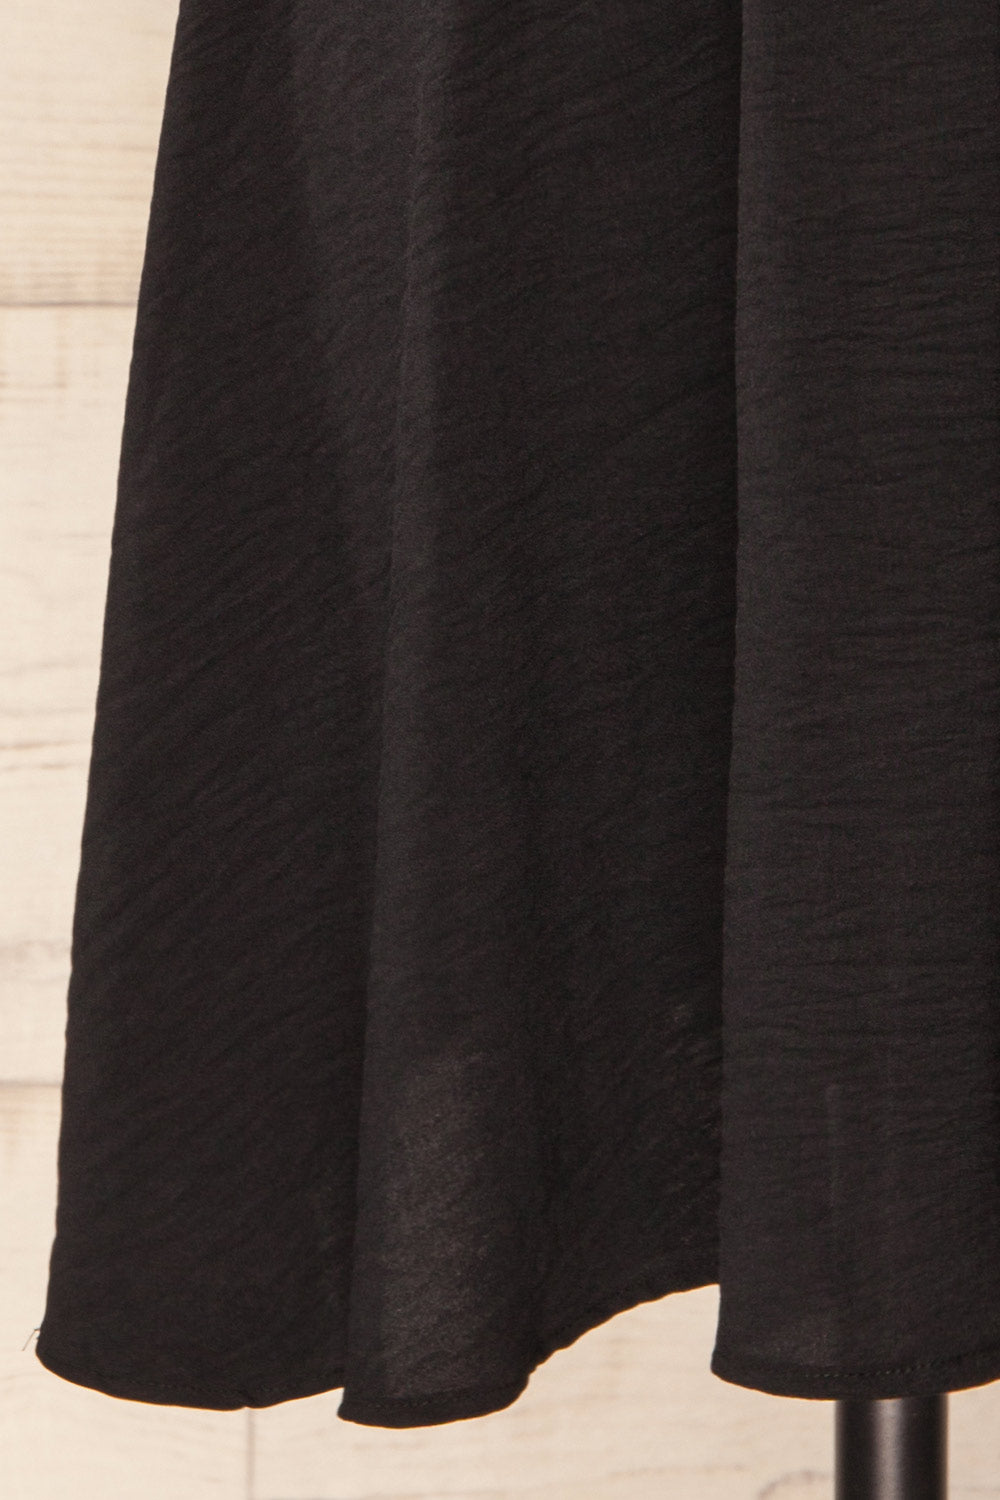 Fordwich Short Black Dress w/ Batwing Sleeves | La petite garçonne  bottom